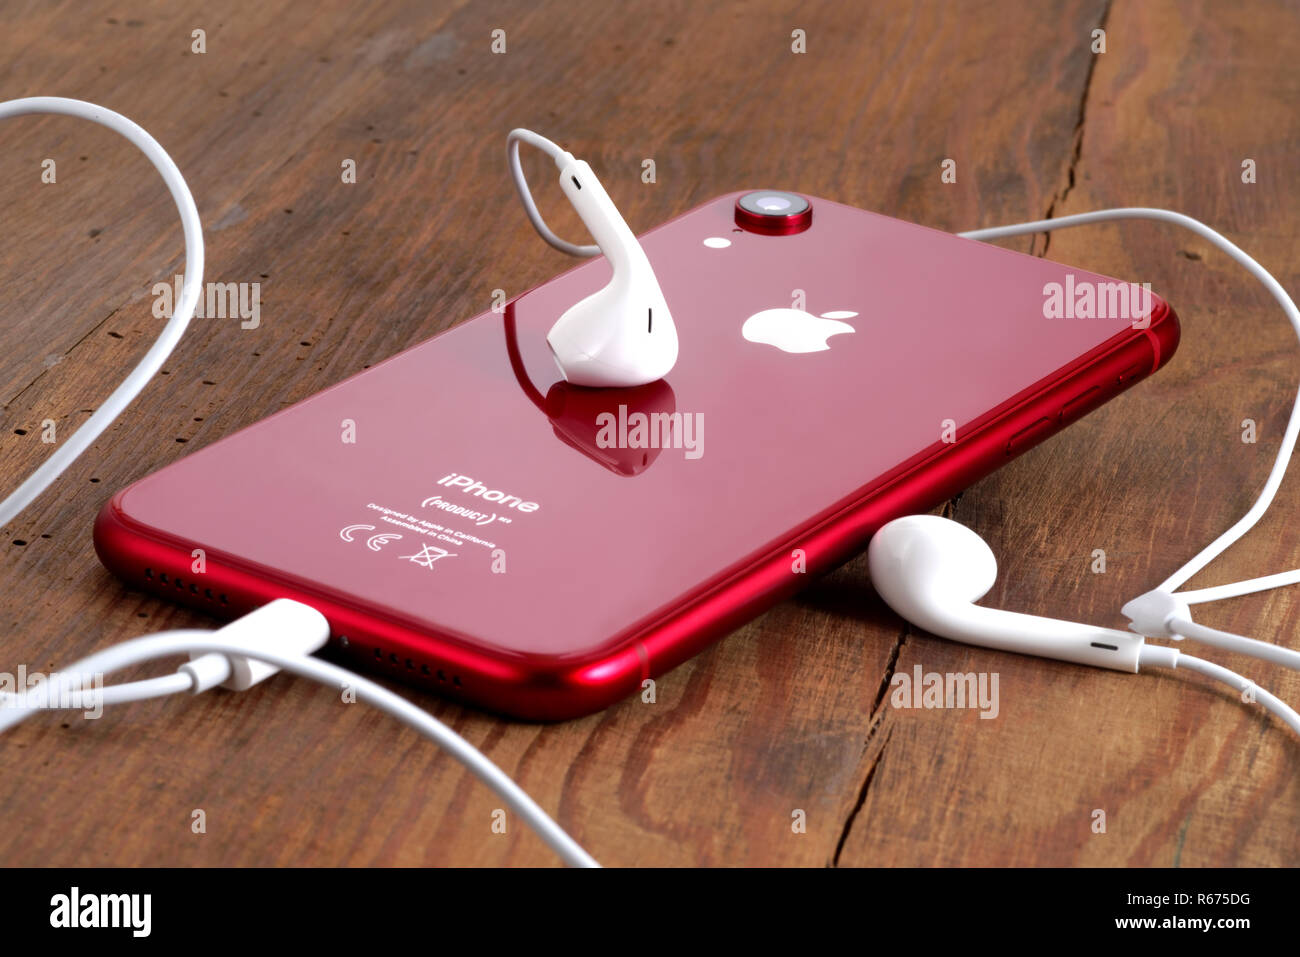 Koszalin, Polonia - Dicembre 04, 2018: Rosso iPhone XR su un tavolo di legno con gli auricolari bianchi. L'iPhone XR è smart phone con multi touch screen produ Foto Stock